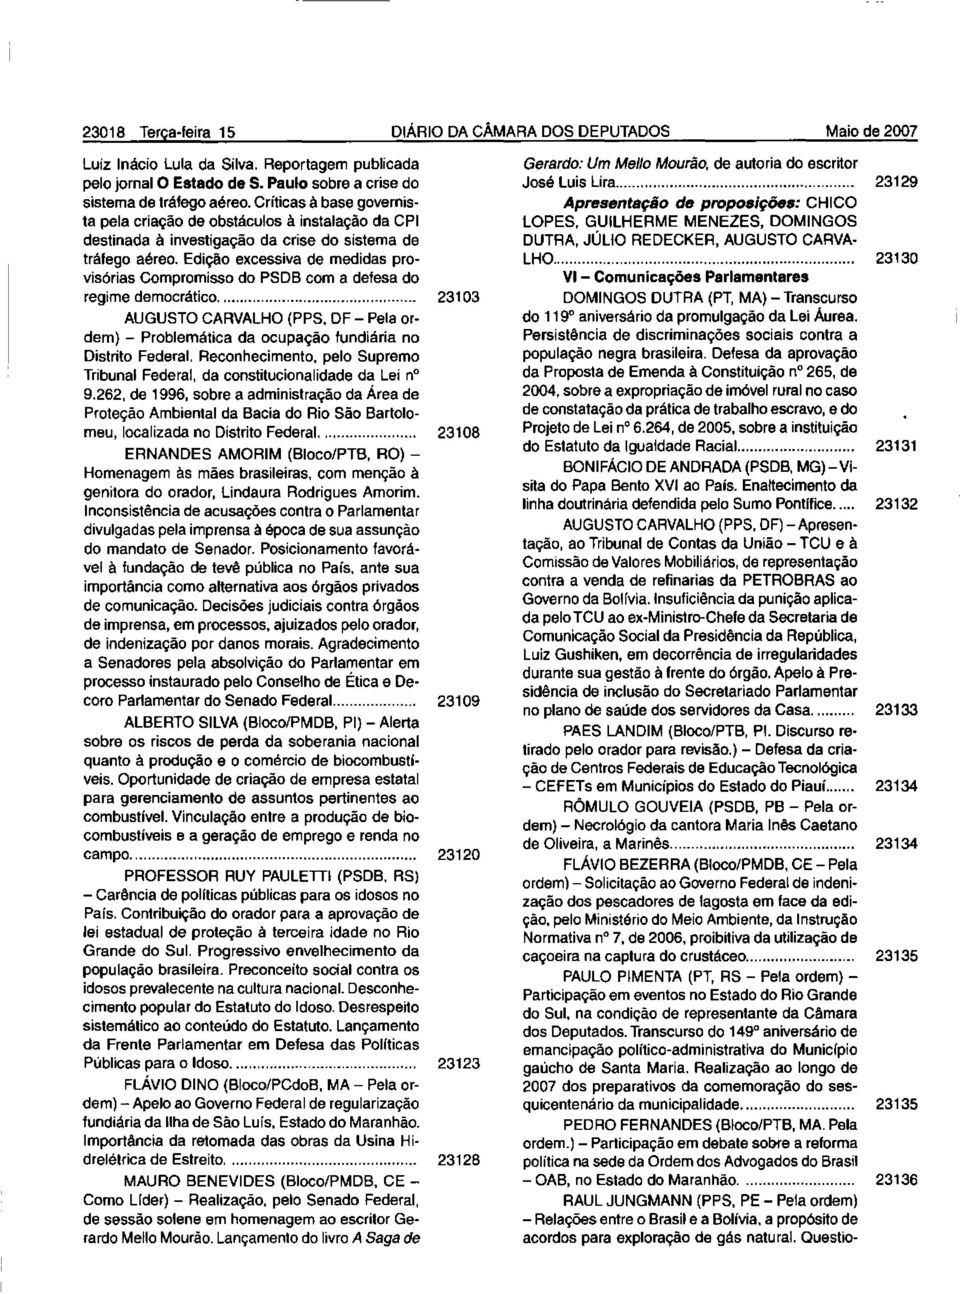 Edição excessiva de medidas provisórias Compromisso do PSDB com a defesa do regime democrático,... 23103 AUGUSTO CARVALHO (PPS.